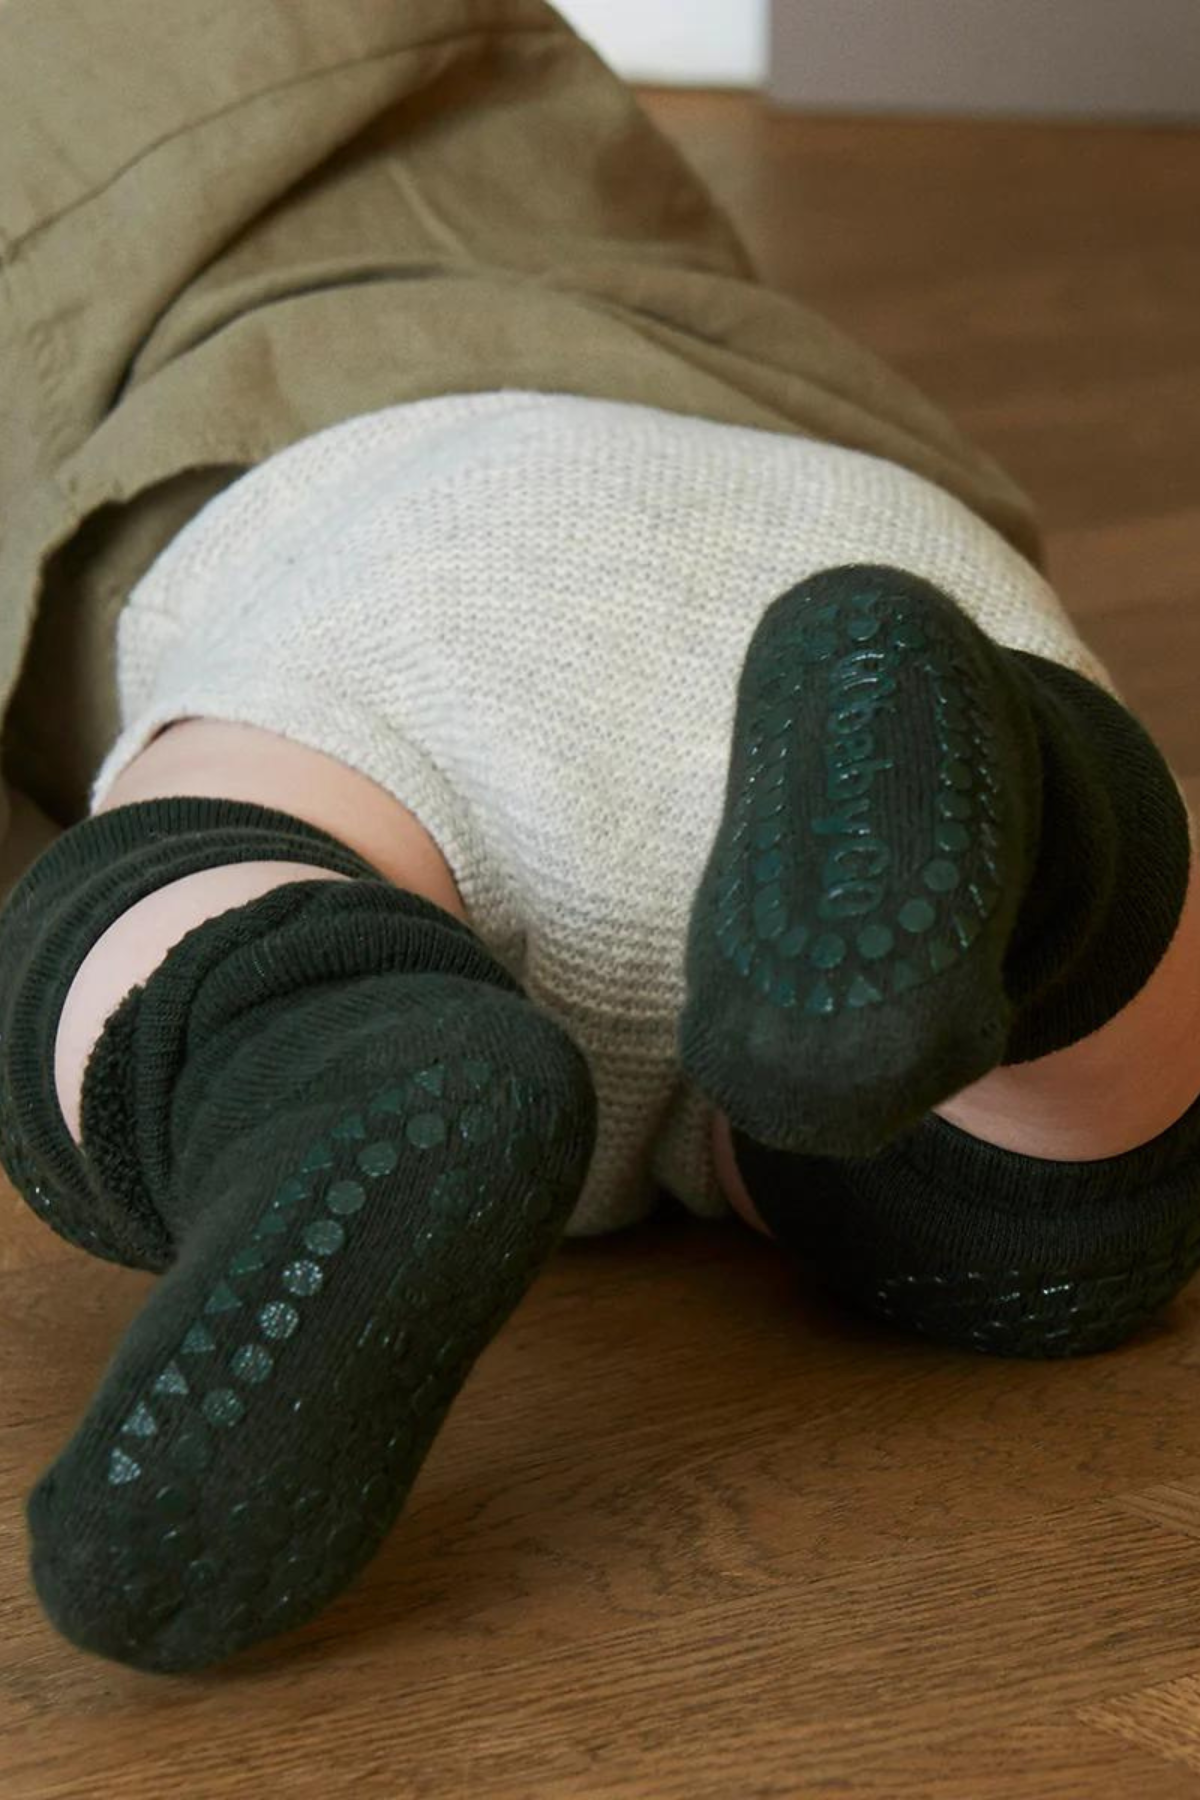 Stopper Socken aus Baumwolle | verschiedene Farben